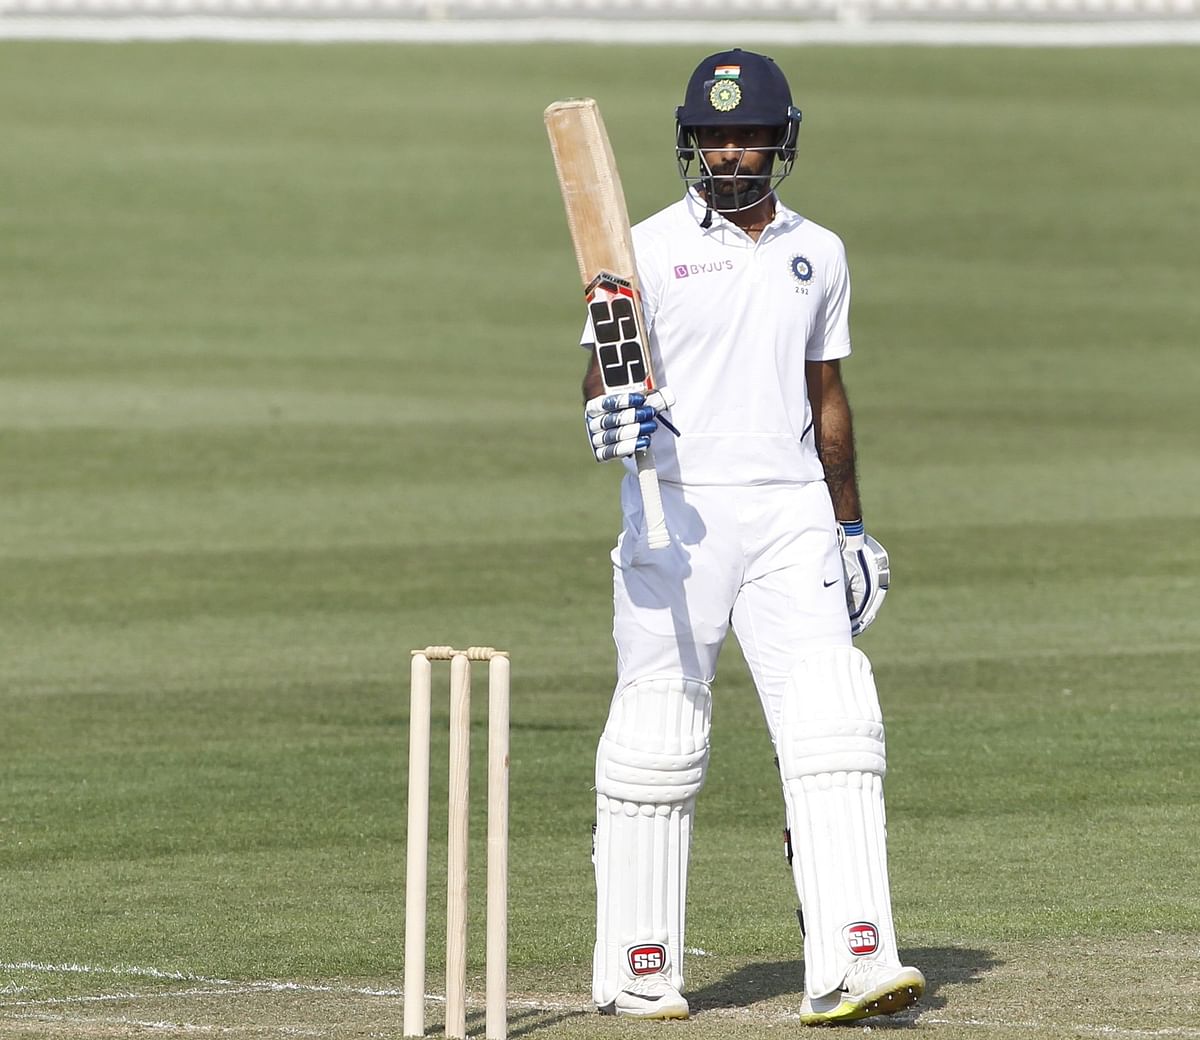 भारत और न्यूजीलैंड के बीच 21 फरवरी से वेलिंग्टन में पहला टेस्ट मैच खेला जाएगा